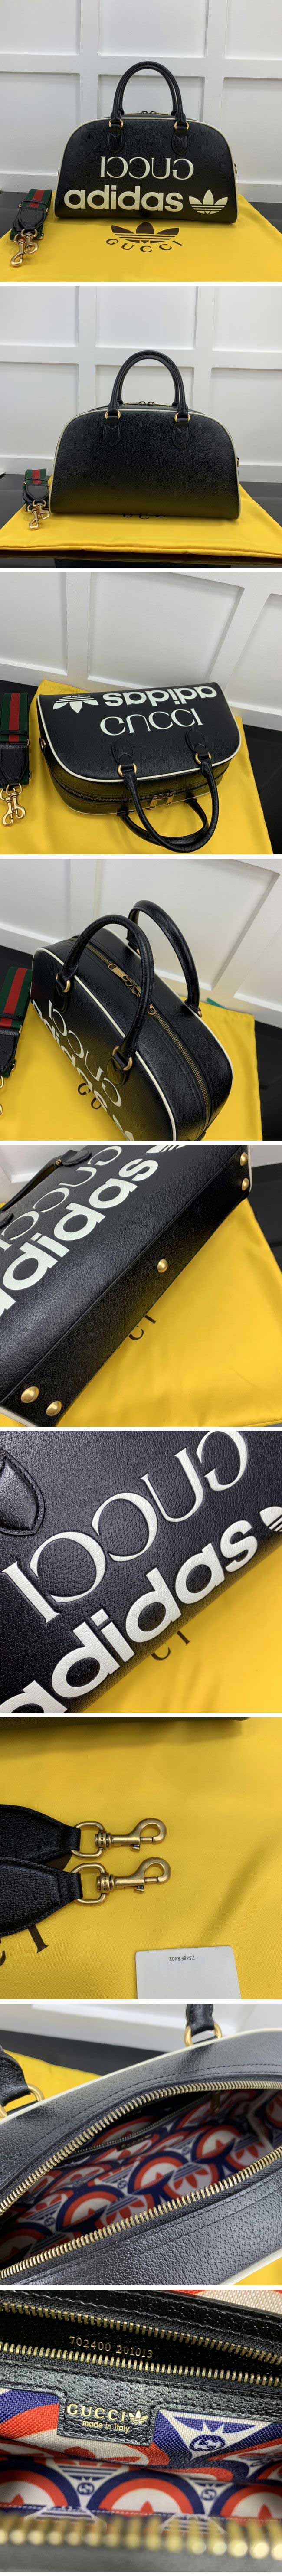 Gucci x Adidas Print Travel Bag Black グッチ x アディダス プリント トラベルバッグ ブラック【N級】